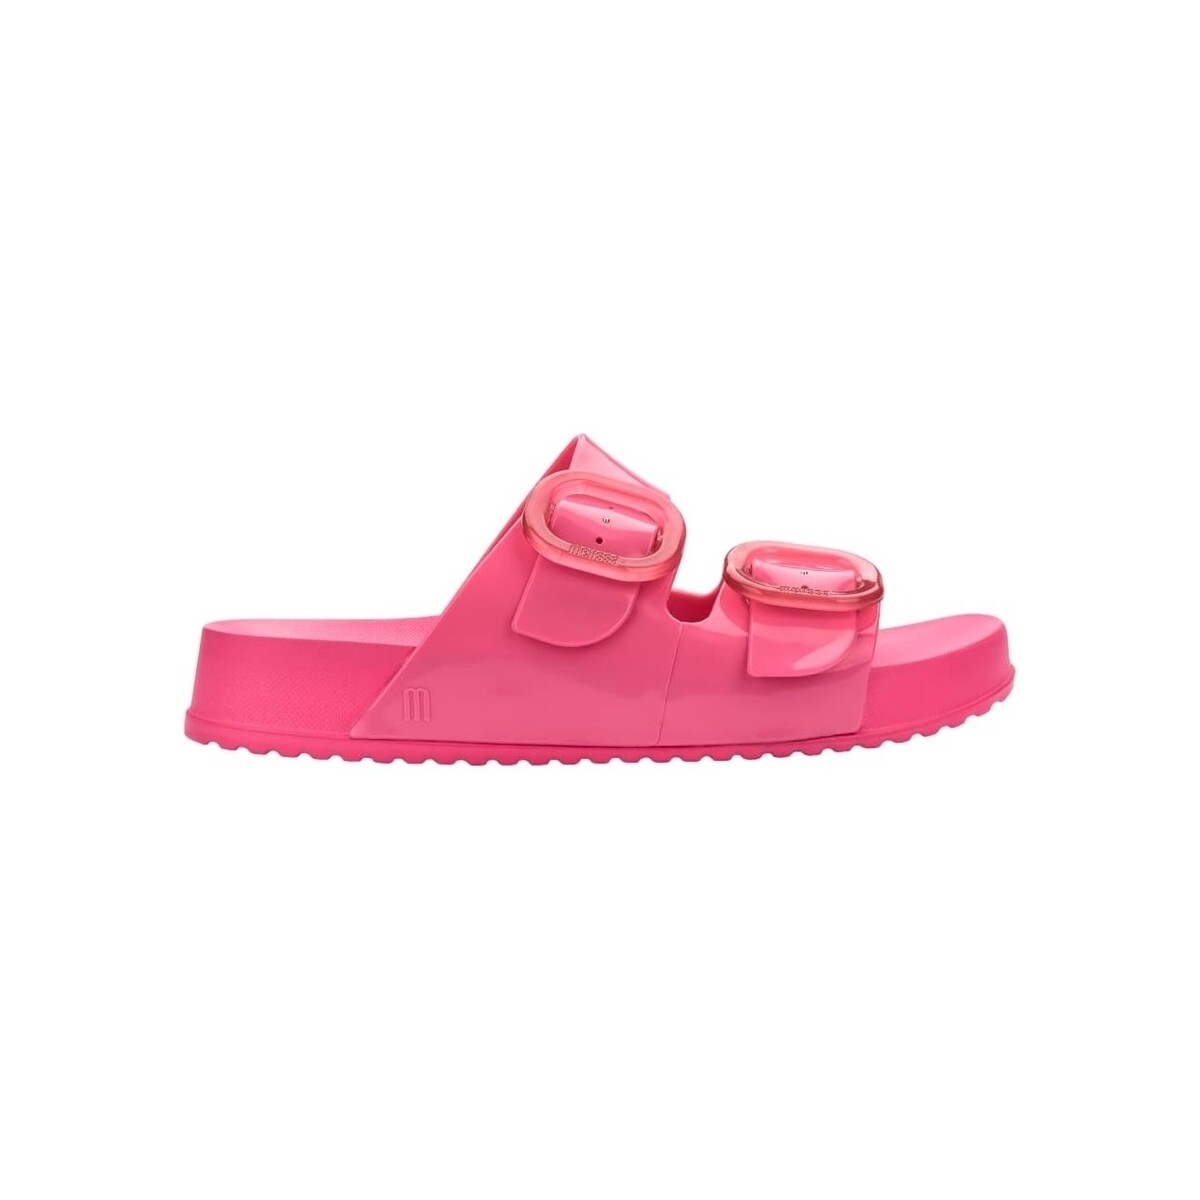 Schoenen Dames Sandalen / Open schoenen Melissa Cozy Slide Fem - Pink Roze